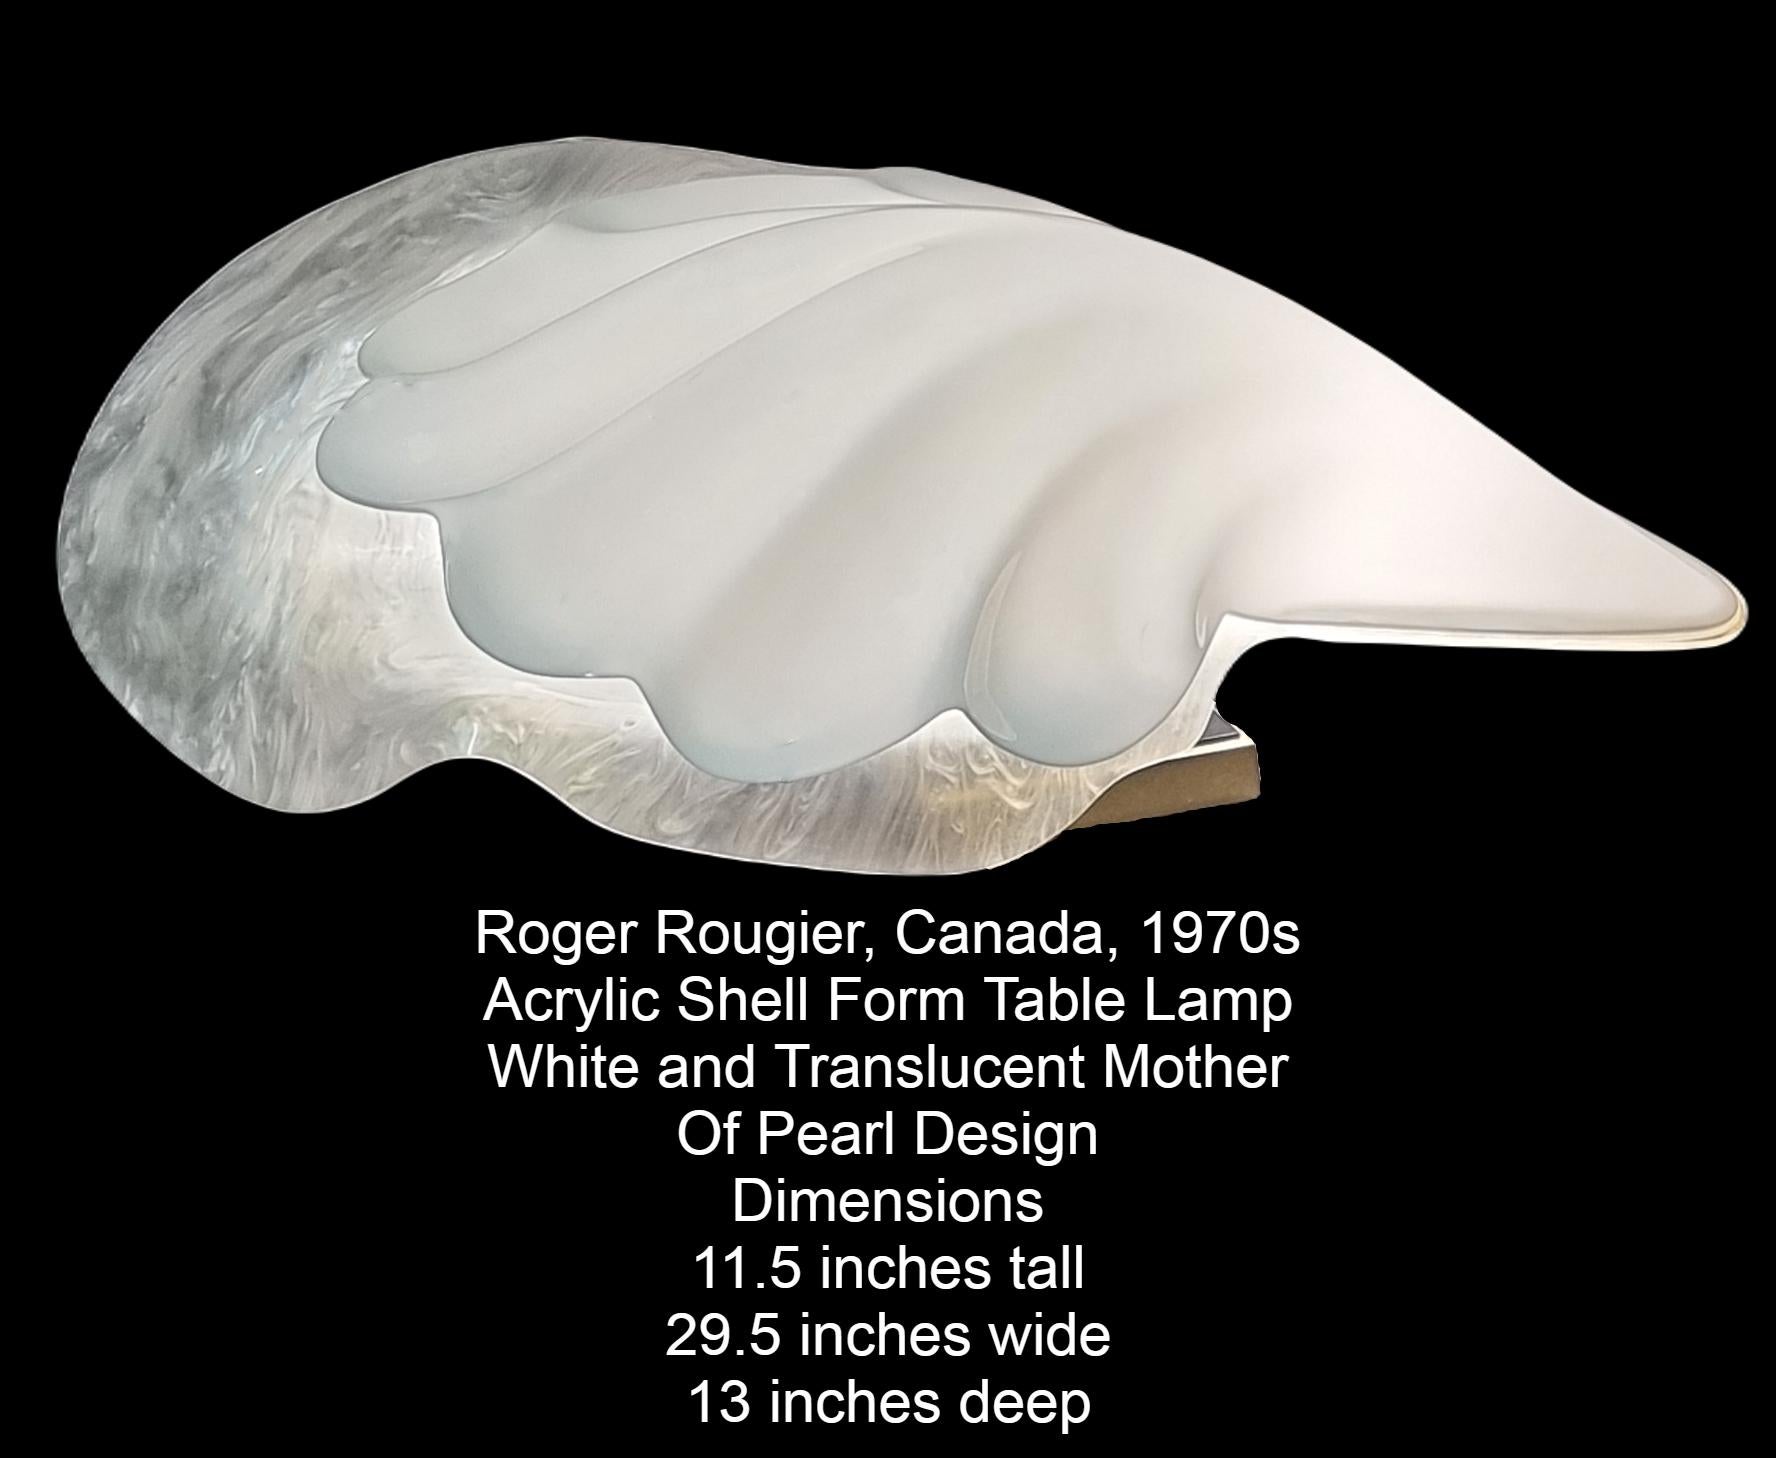 Vintage Roger Rougier acrylique lampe de table en forme de coquillage.
Moitié supérieure en acrylique blanc et moitié inférieure translucide, motifs de cordes marbrées en blanc et gris donnant l'illusion d'un aspect nacré.
Posé sur un socle en